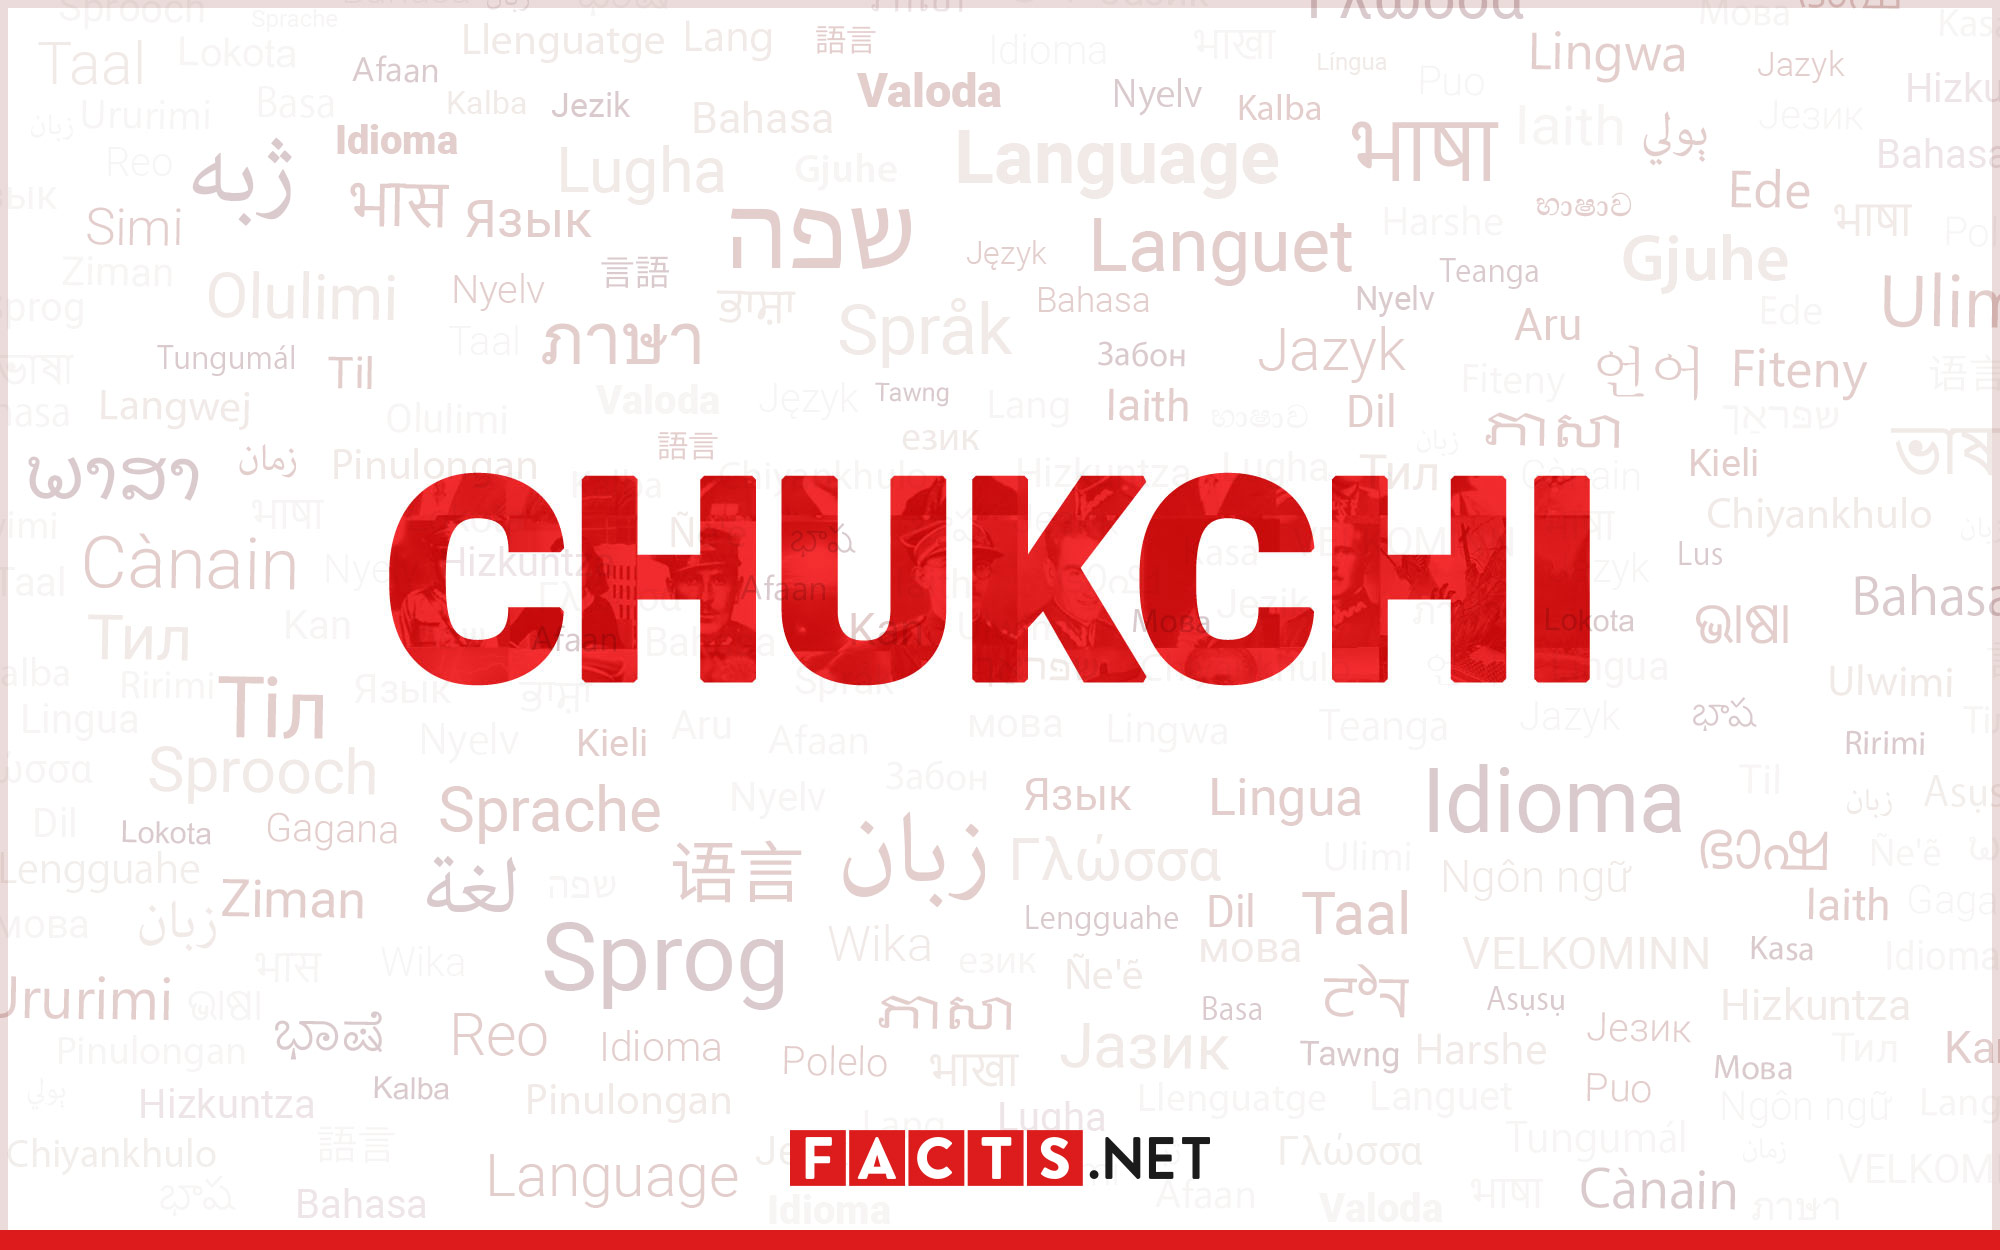 13-astonishing-facts-about-chukchi